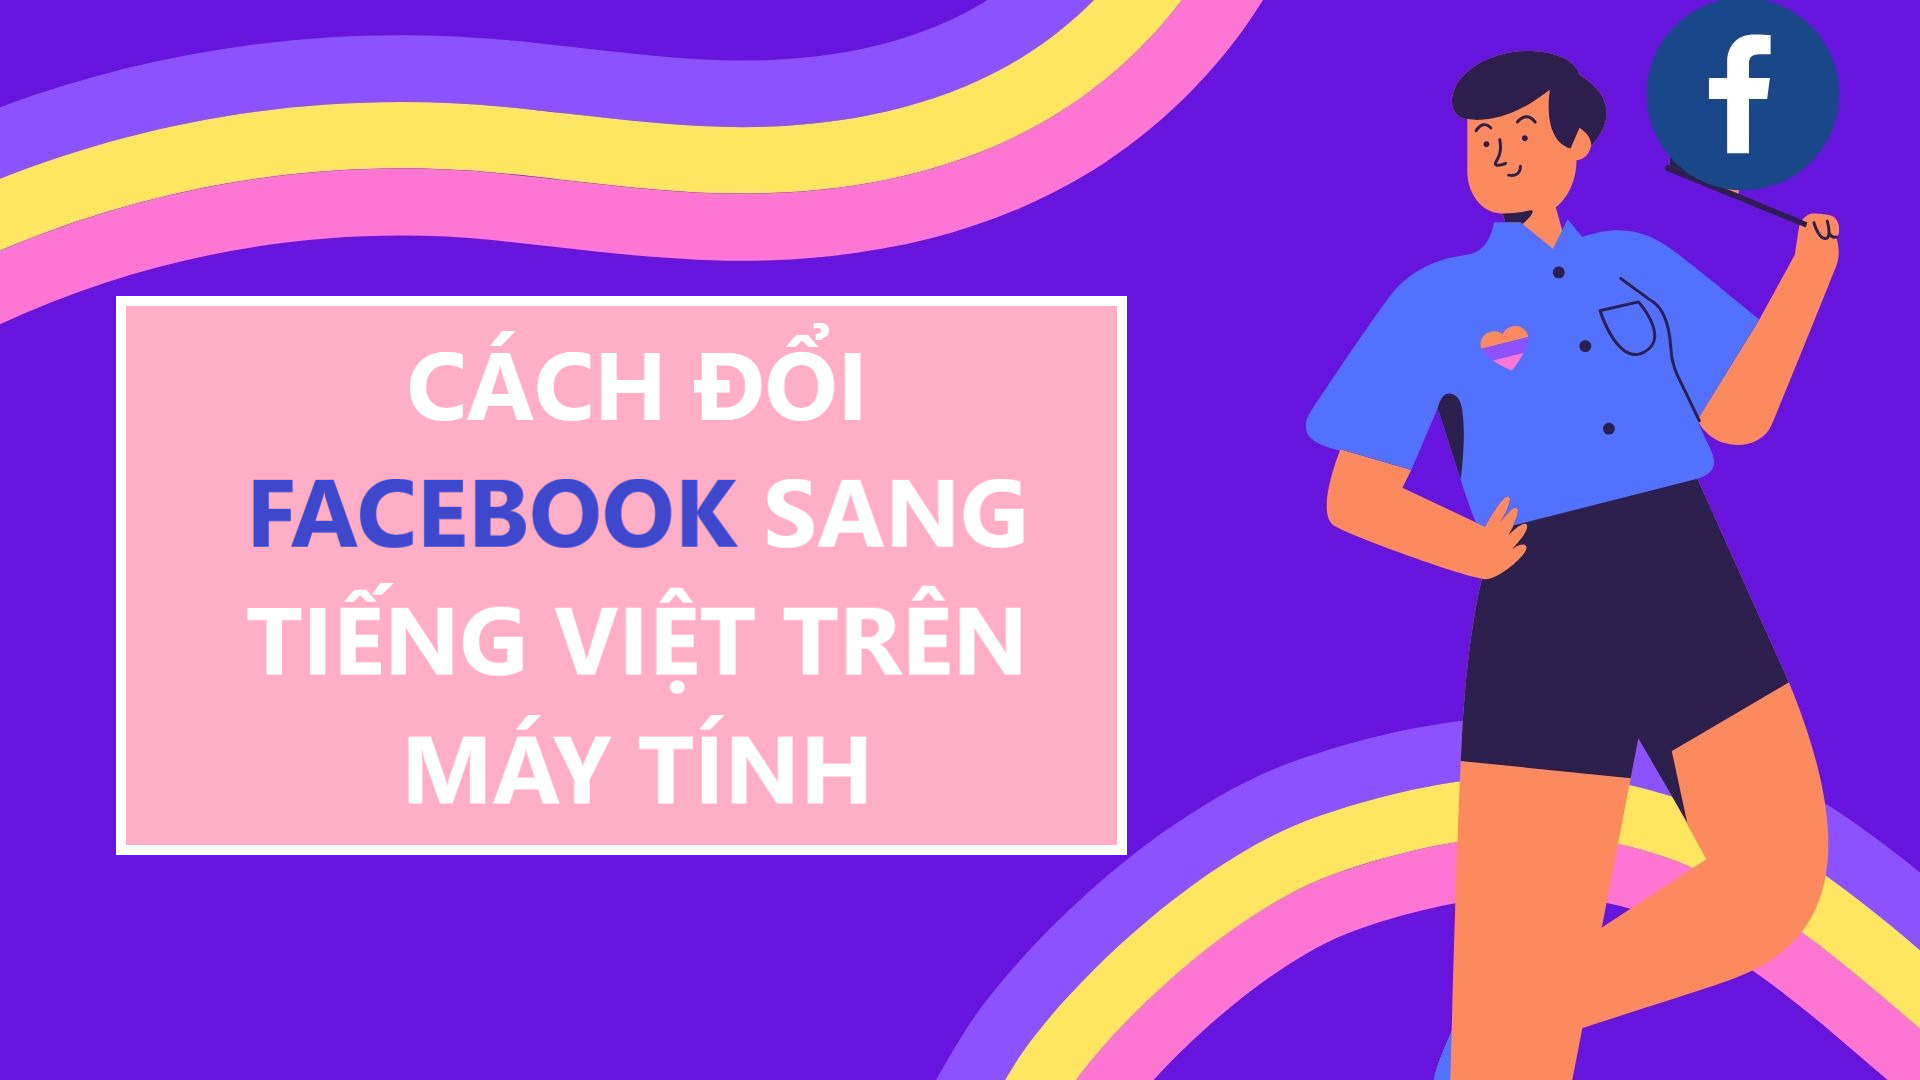 Hướng dẫn từng bước chuyển Facebook sang Tiếng Việt trên máy tính 1